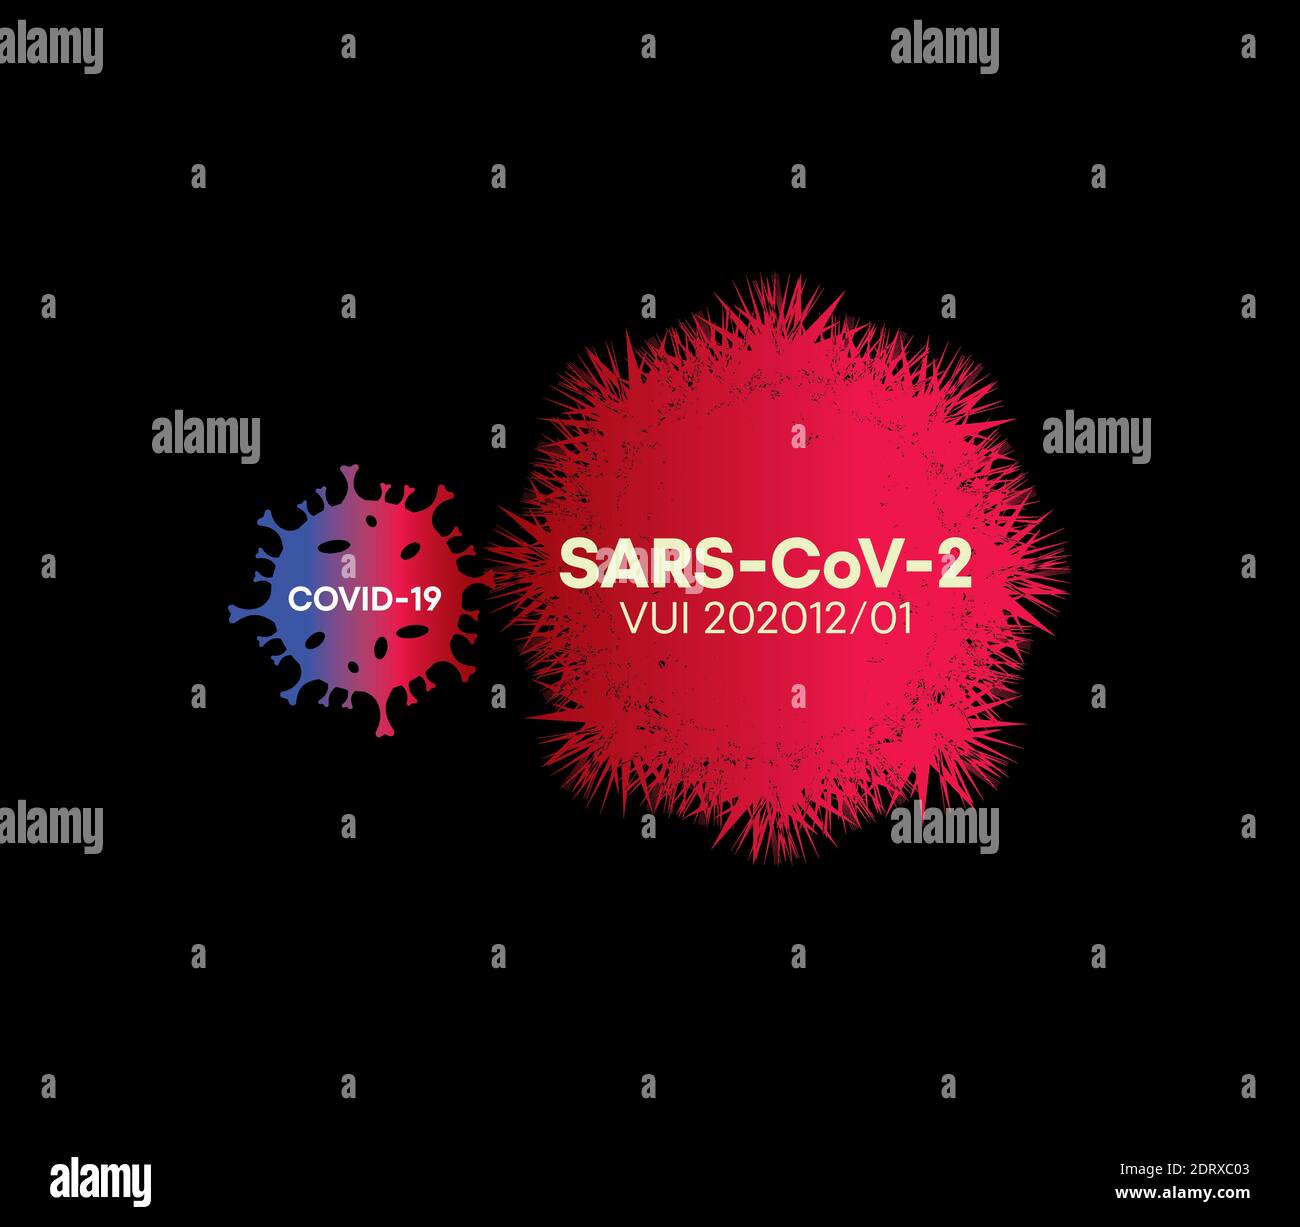 SARS-CoV-2. Mortal brote global de coronavirus SARS-CoV-2. Póster con concepto de pandemia y alerta de coronavirus COVID 19. Virus recién formado. Ilustración del Vector